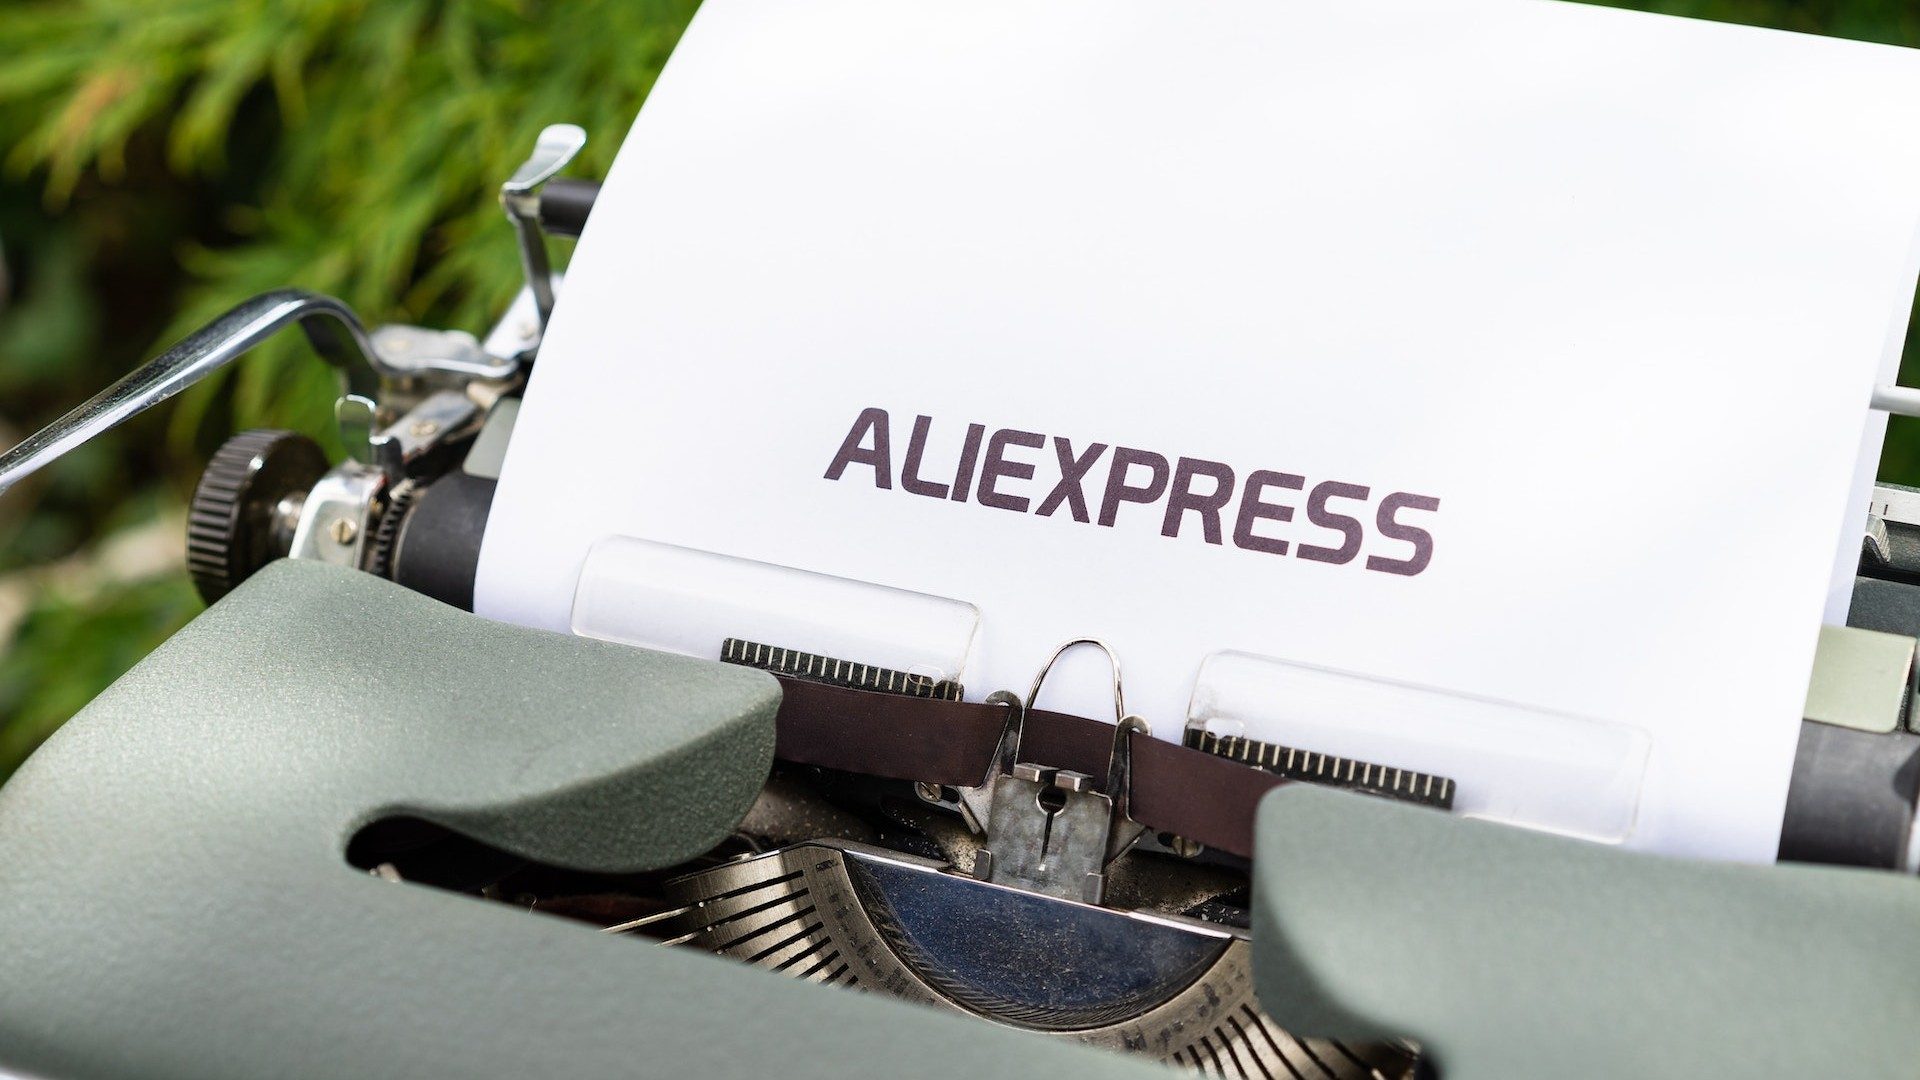 Eine Schreibmaschine tippt das Wort "Aliexpress", ein Service des chinesischen E-Commerce-Konzerns Alibaba